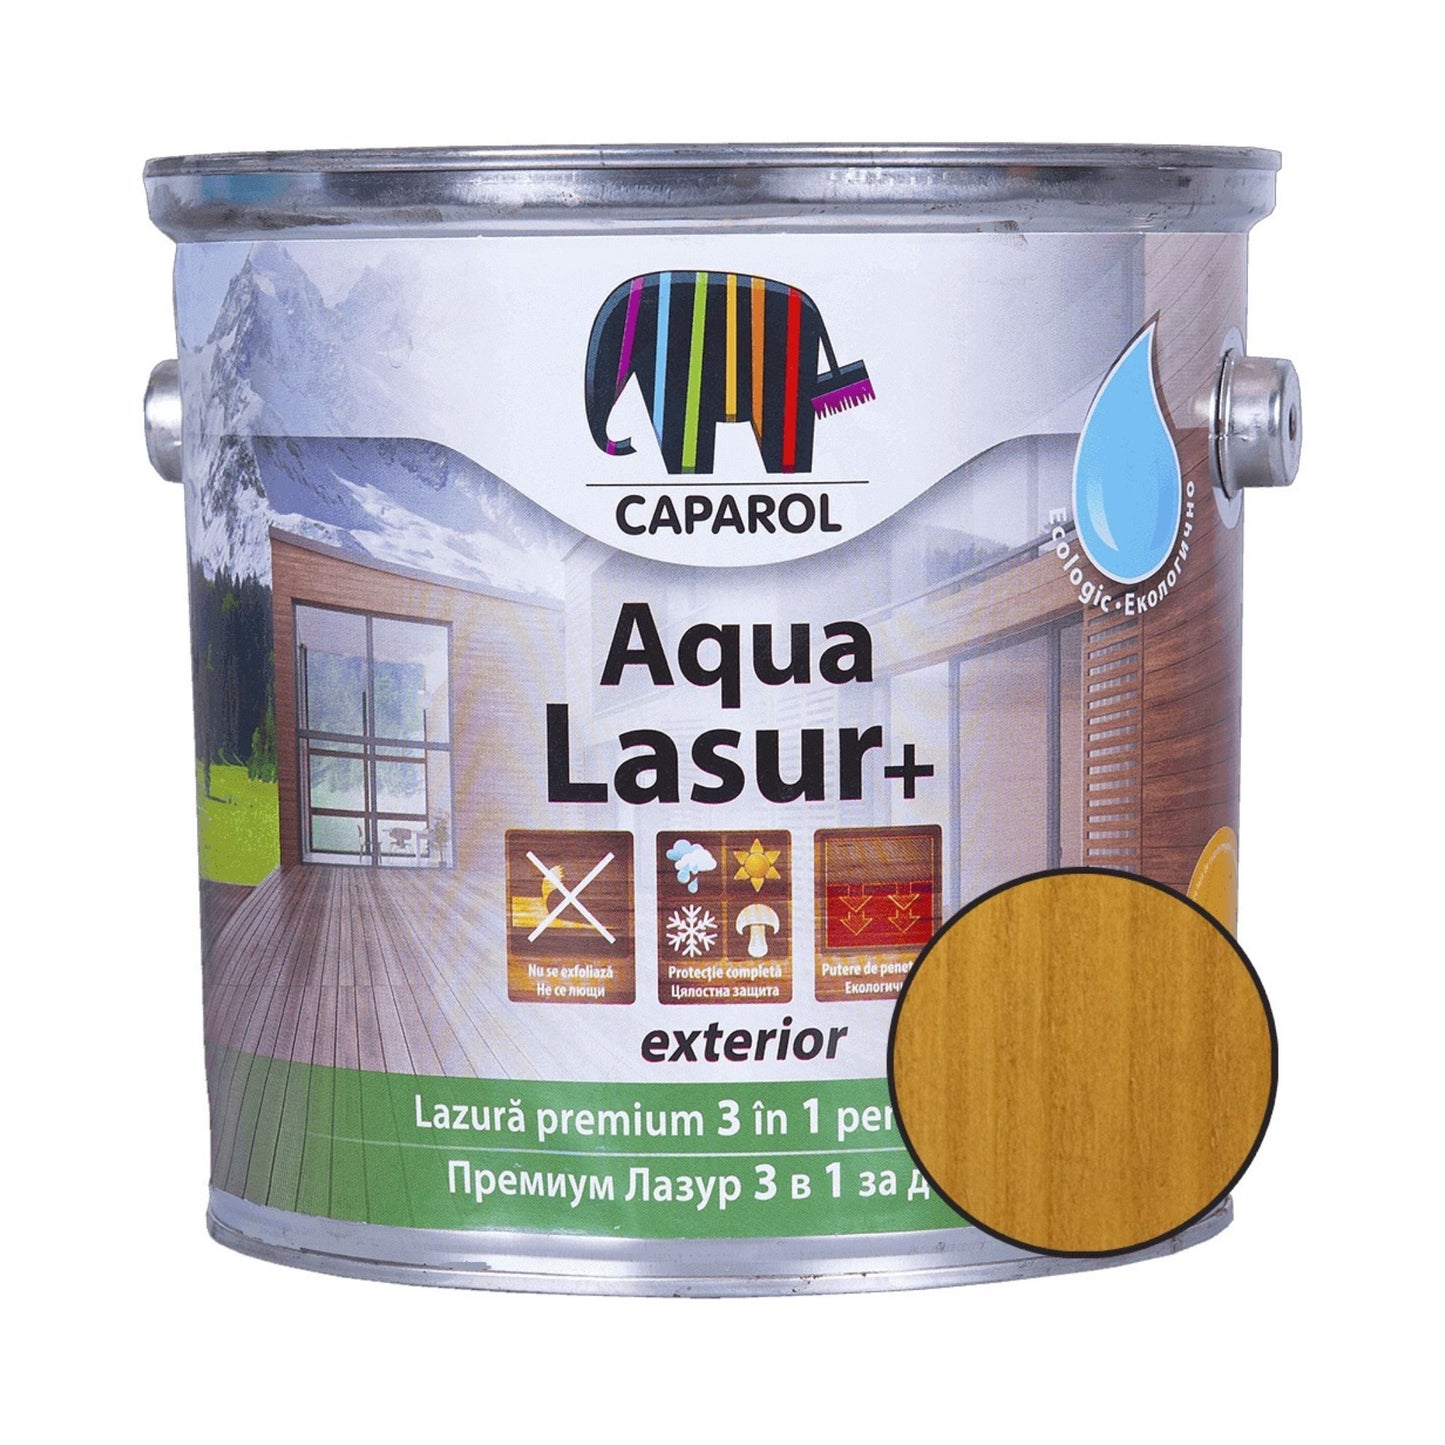 Bait pentru lemn pe baza de apa Caparol Aqua Lasur + - Shopdecor.ro Lazura pentru lemn